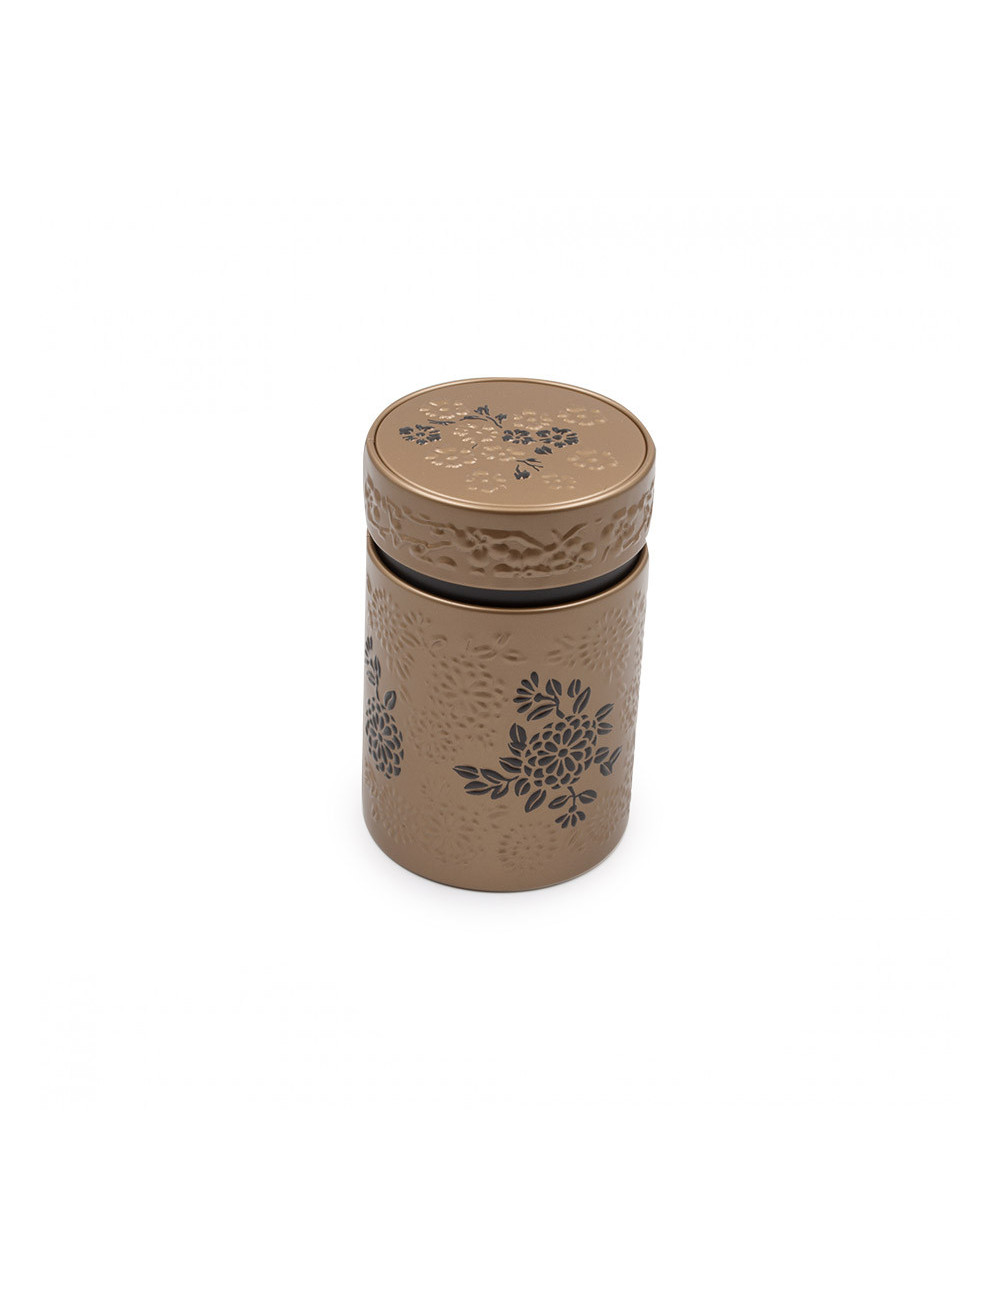 Bellissimo barattolo porta tè oro opaco con fiori a rilievo - La Pianta del Tè Vendita online